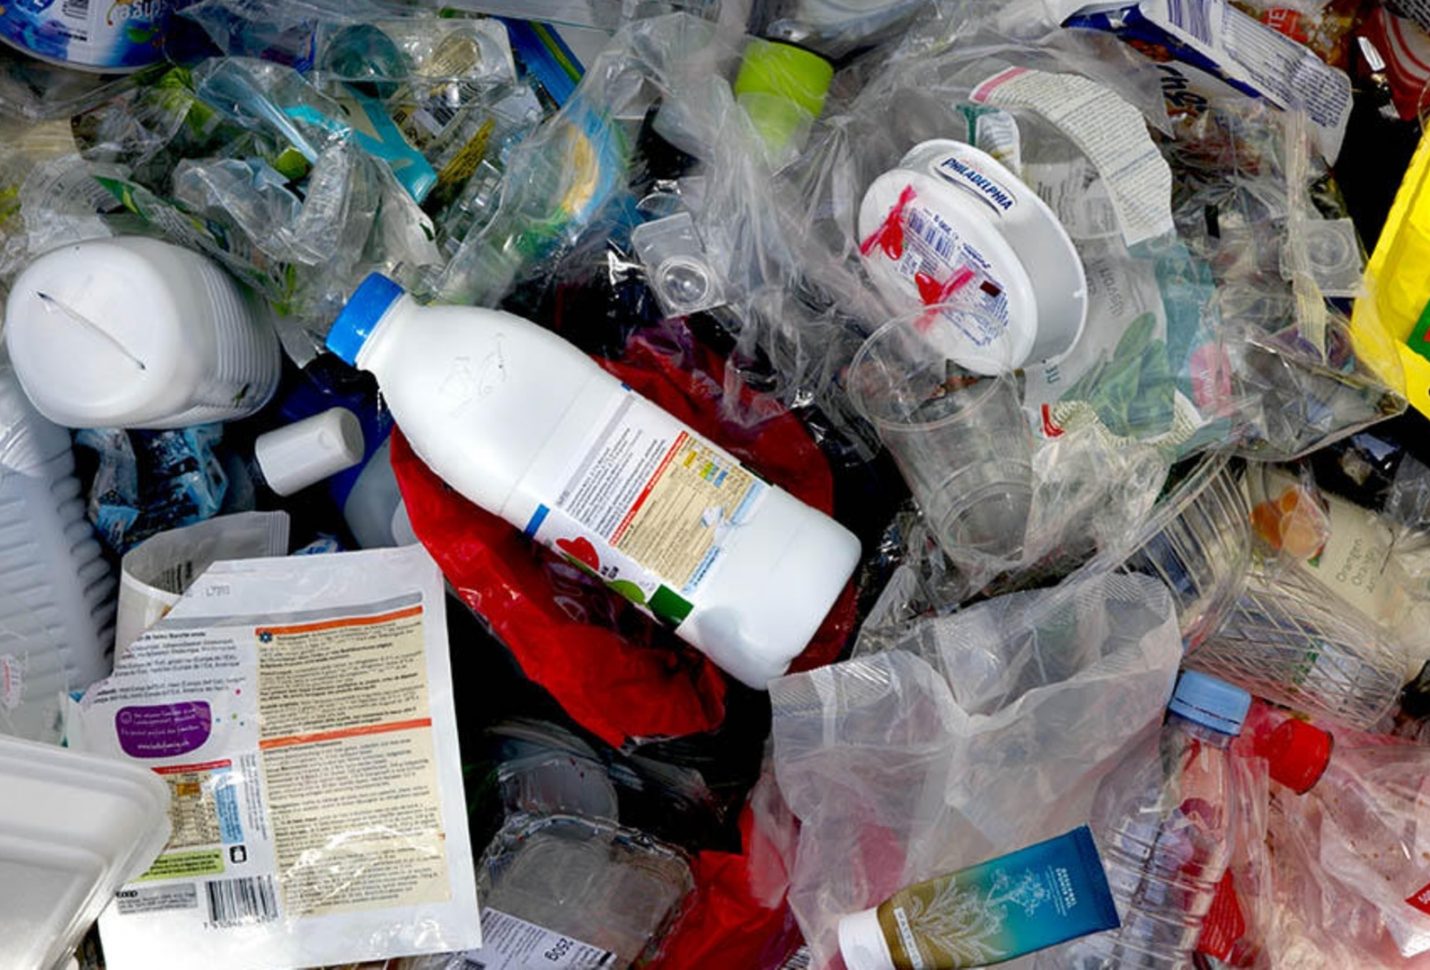 تونس تستبدل الأكياس البلاستيكية بأخرى صديقة للبيئة اعتبارا من اليوم